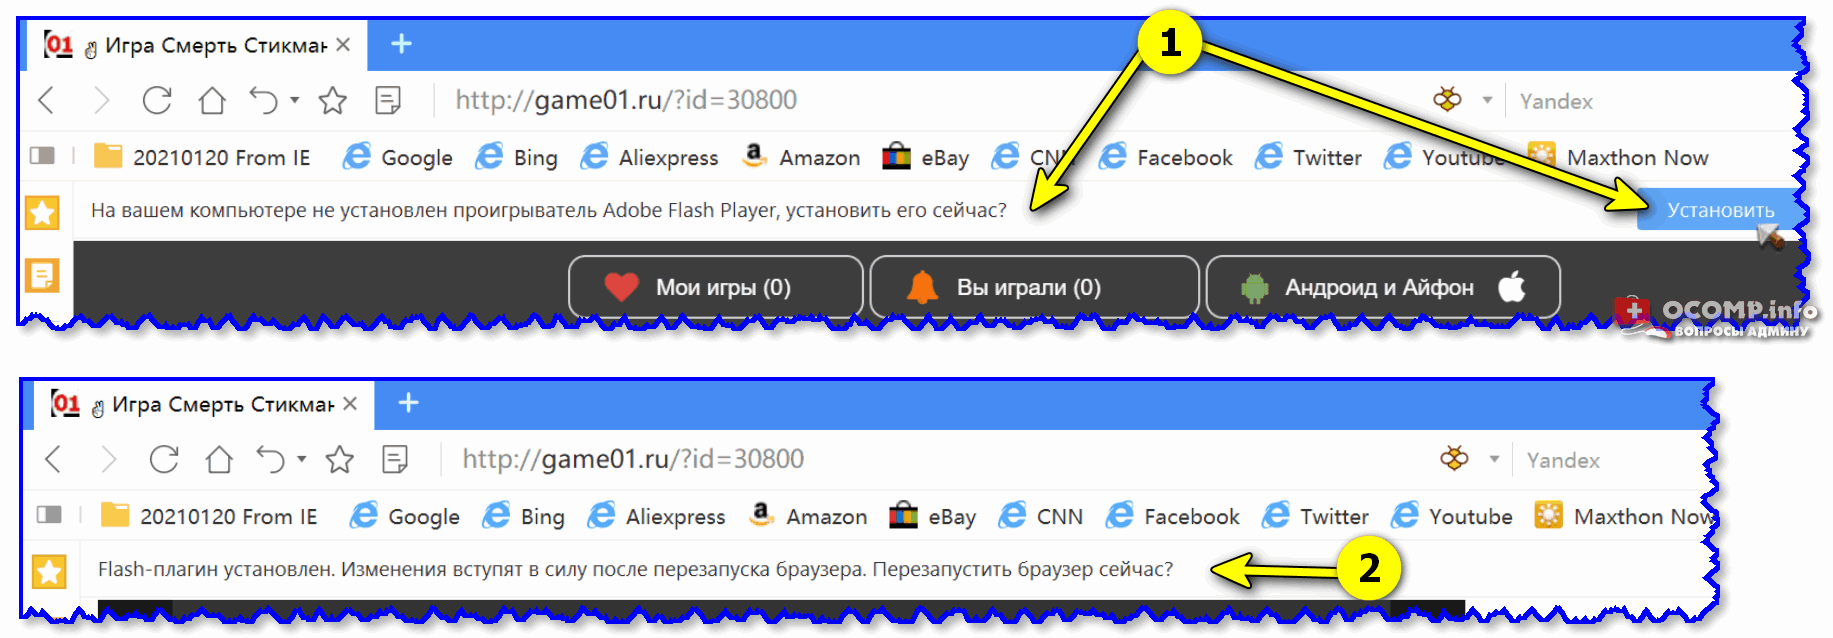 Как установить flash в тор браузере mega скачать бесплатно тор браузер на русском торрент mega2web